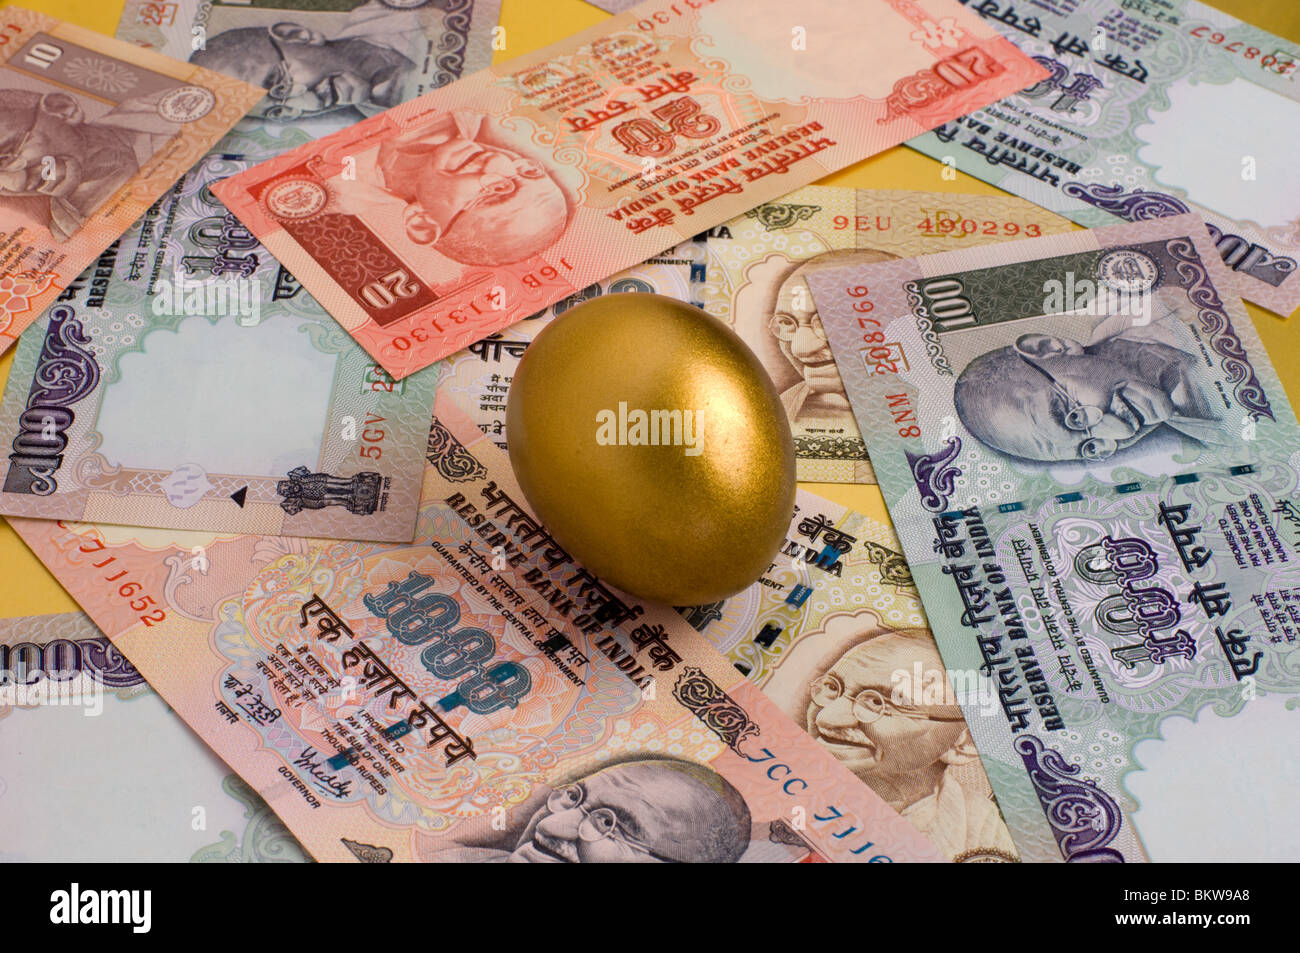 Indische Rupie Geldscheine und ein goldenes Ei Stockfoto